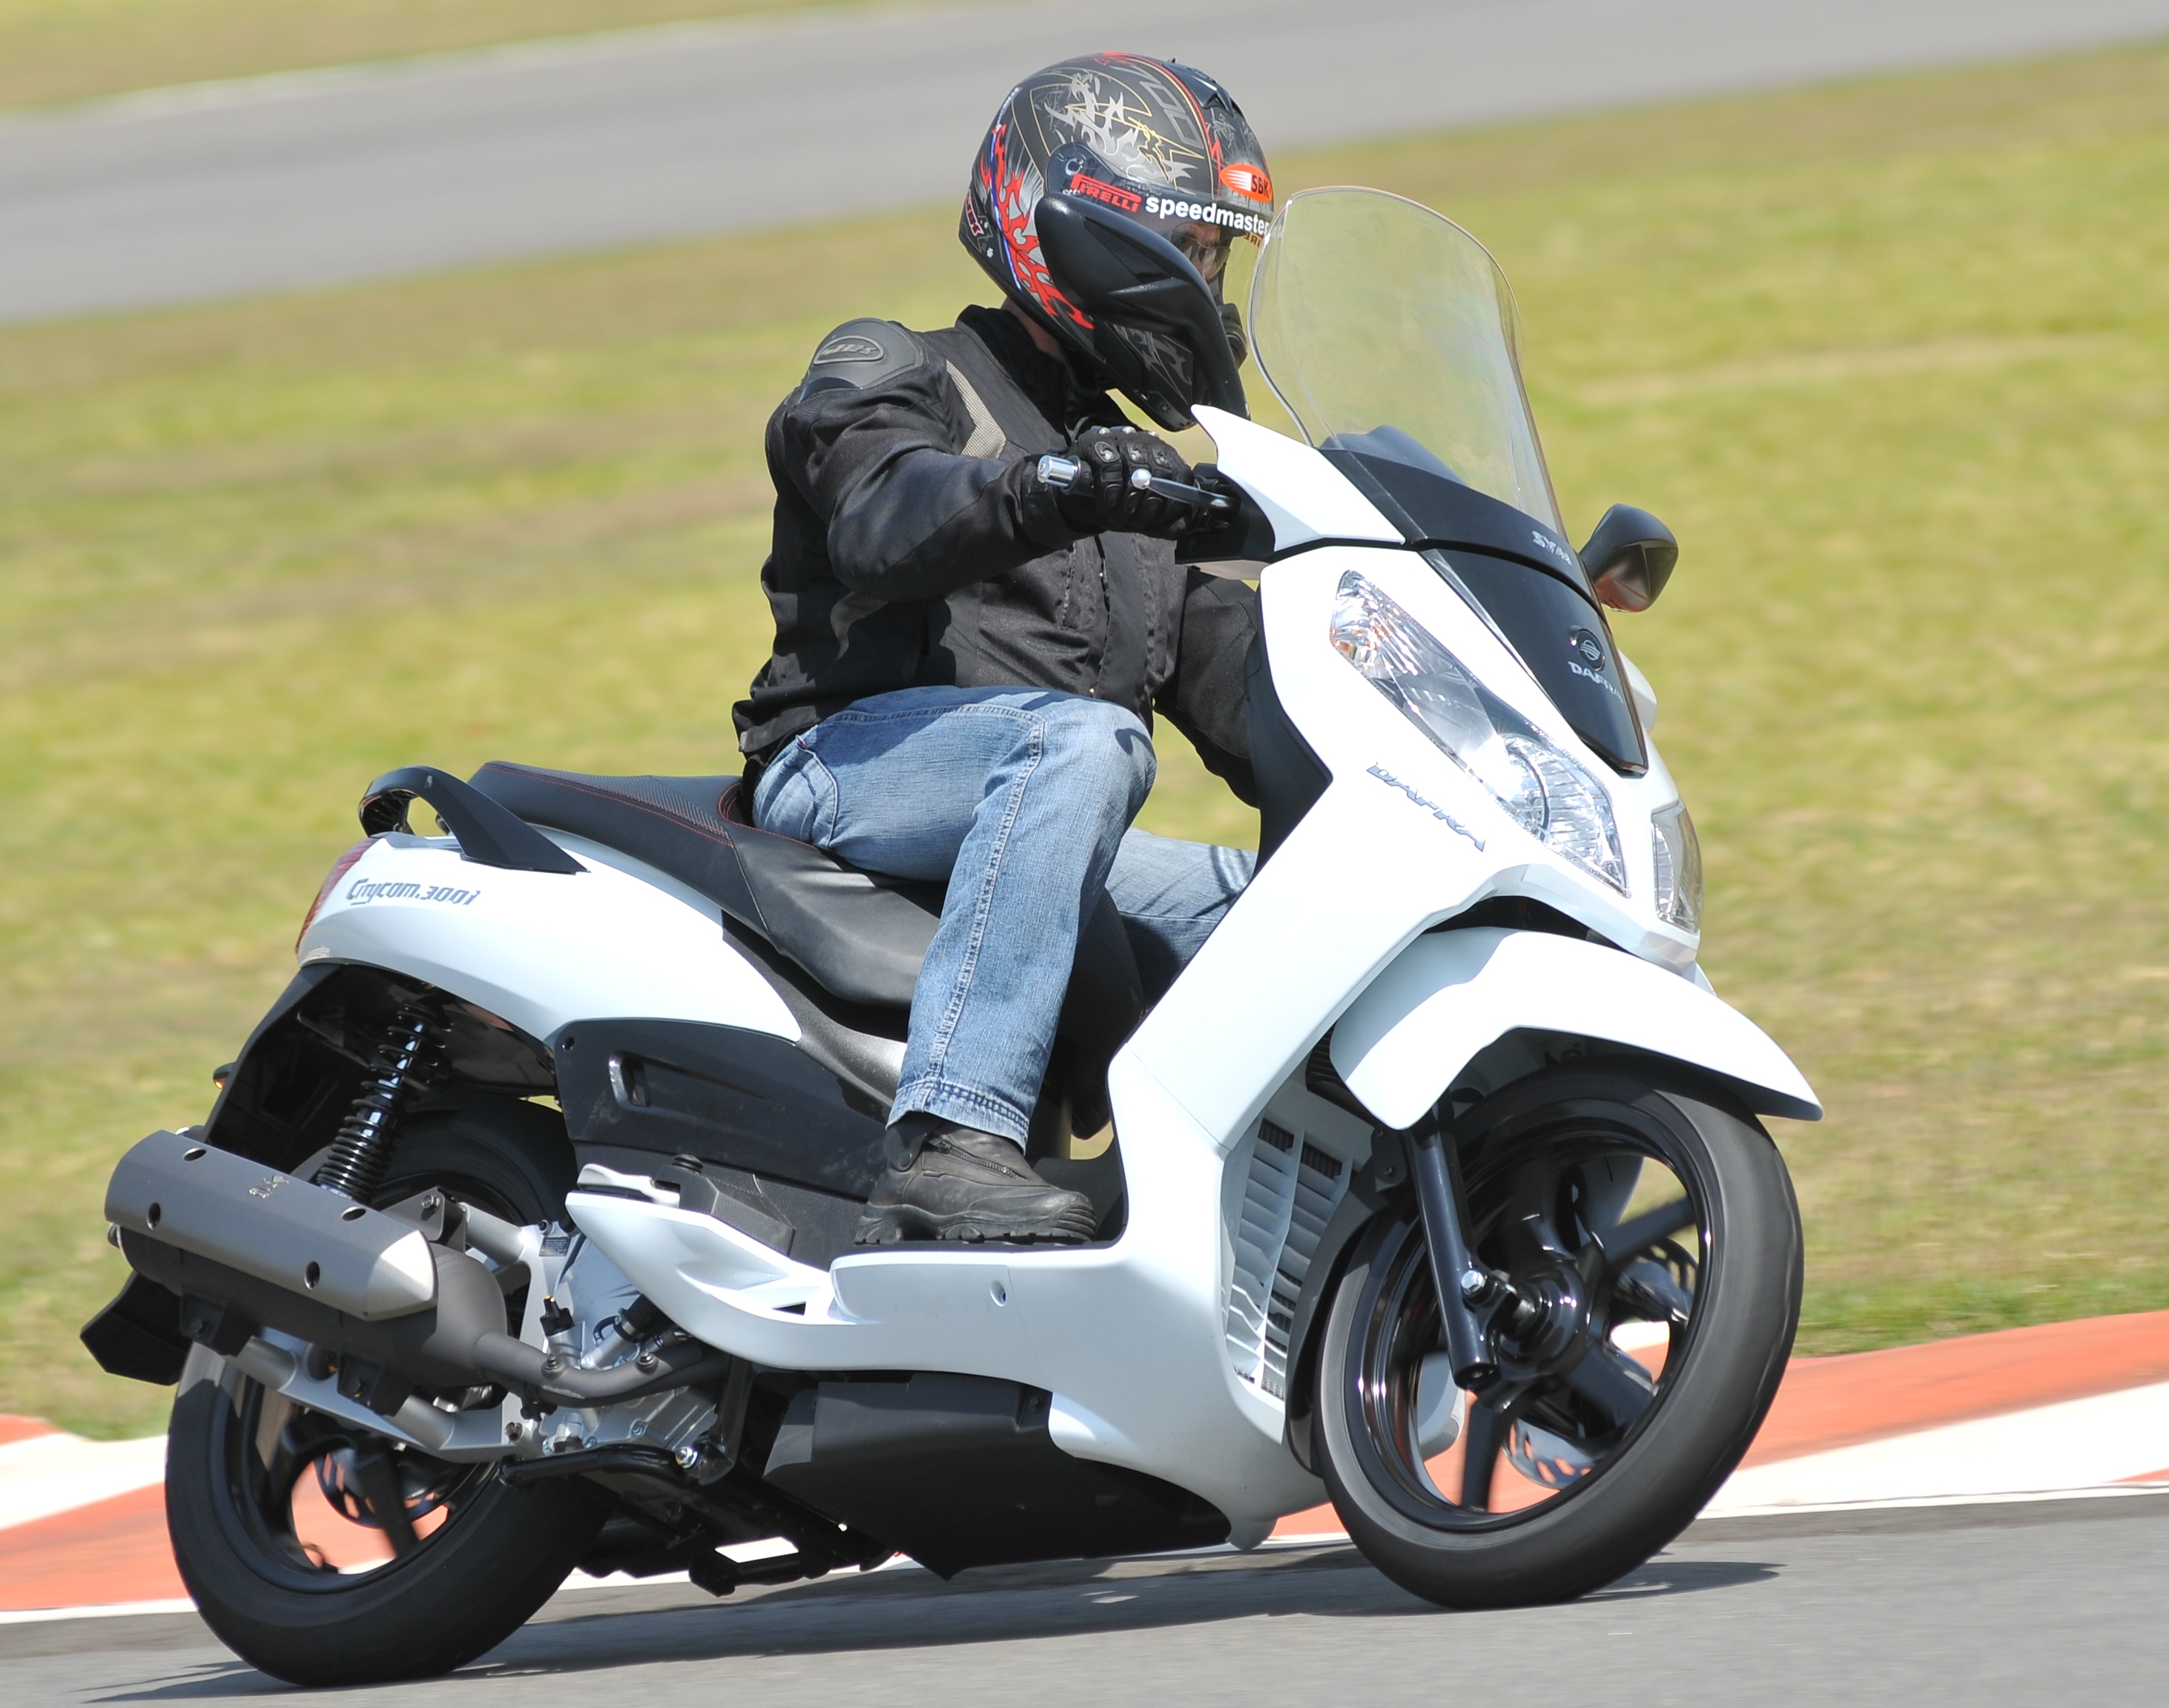 DUCATI pretende vender 27% mais motos no Brasil em 2023 - PRO MOTO Revistas  de Moto e Notícias sempre atualizadas sobre motociclismo